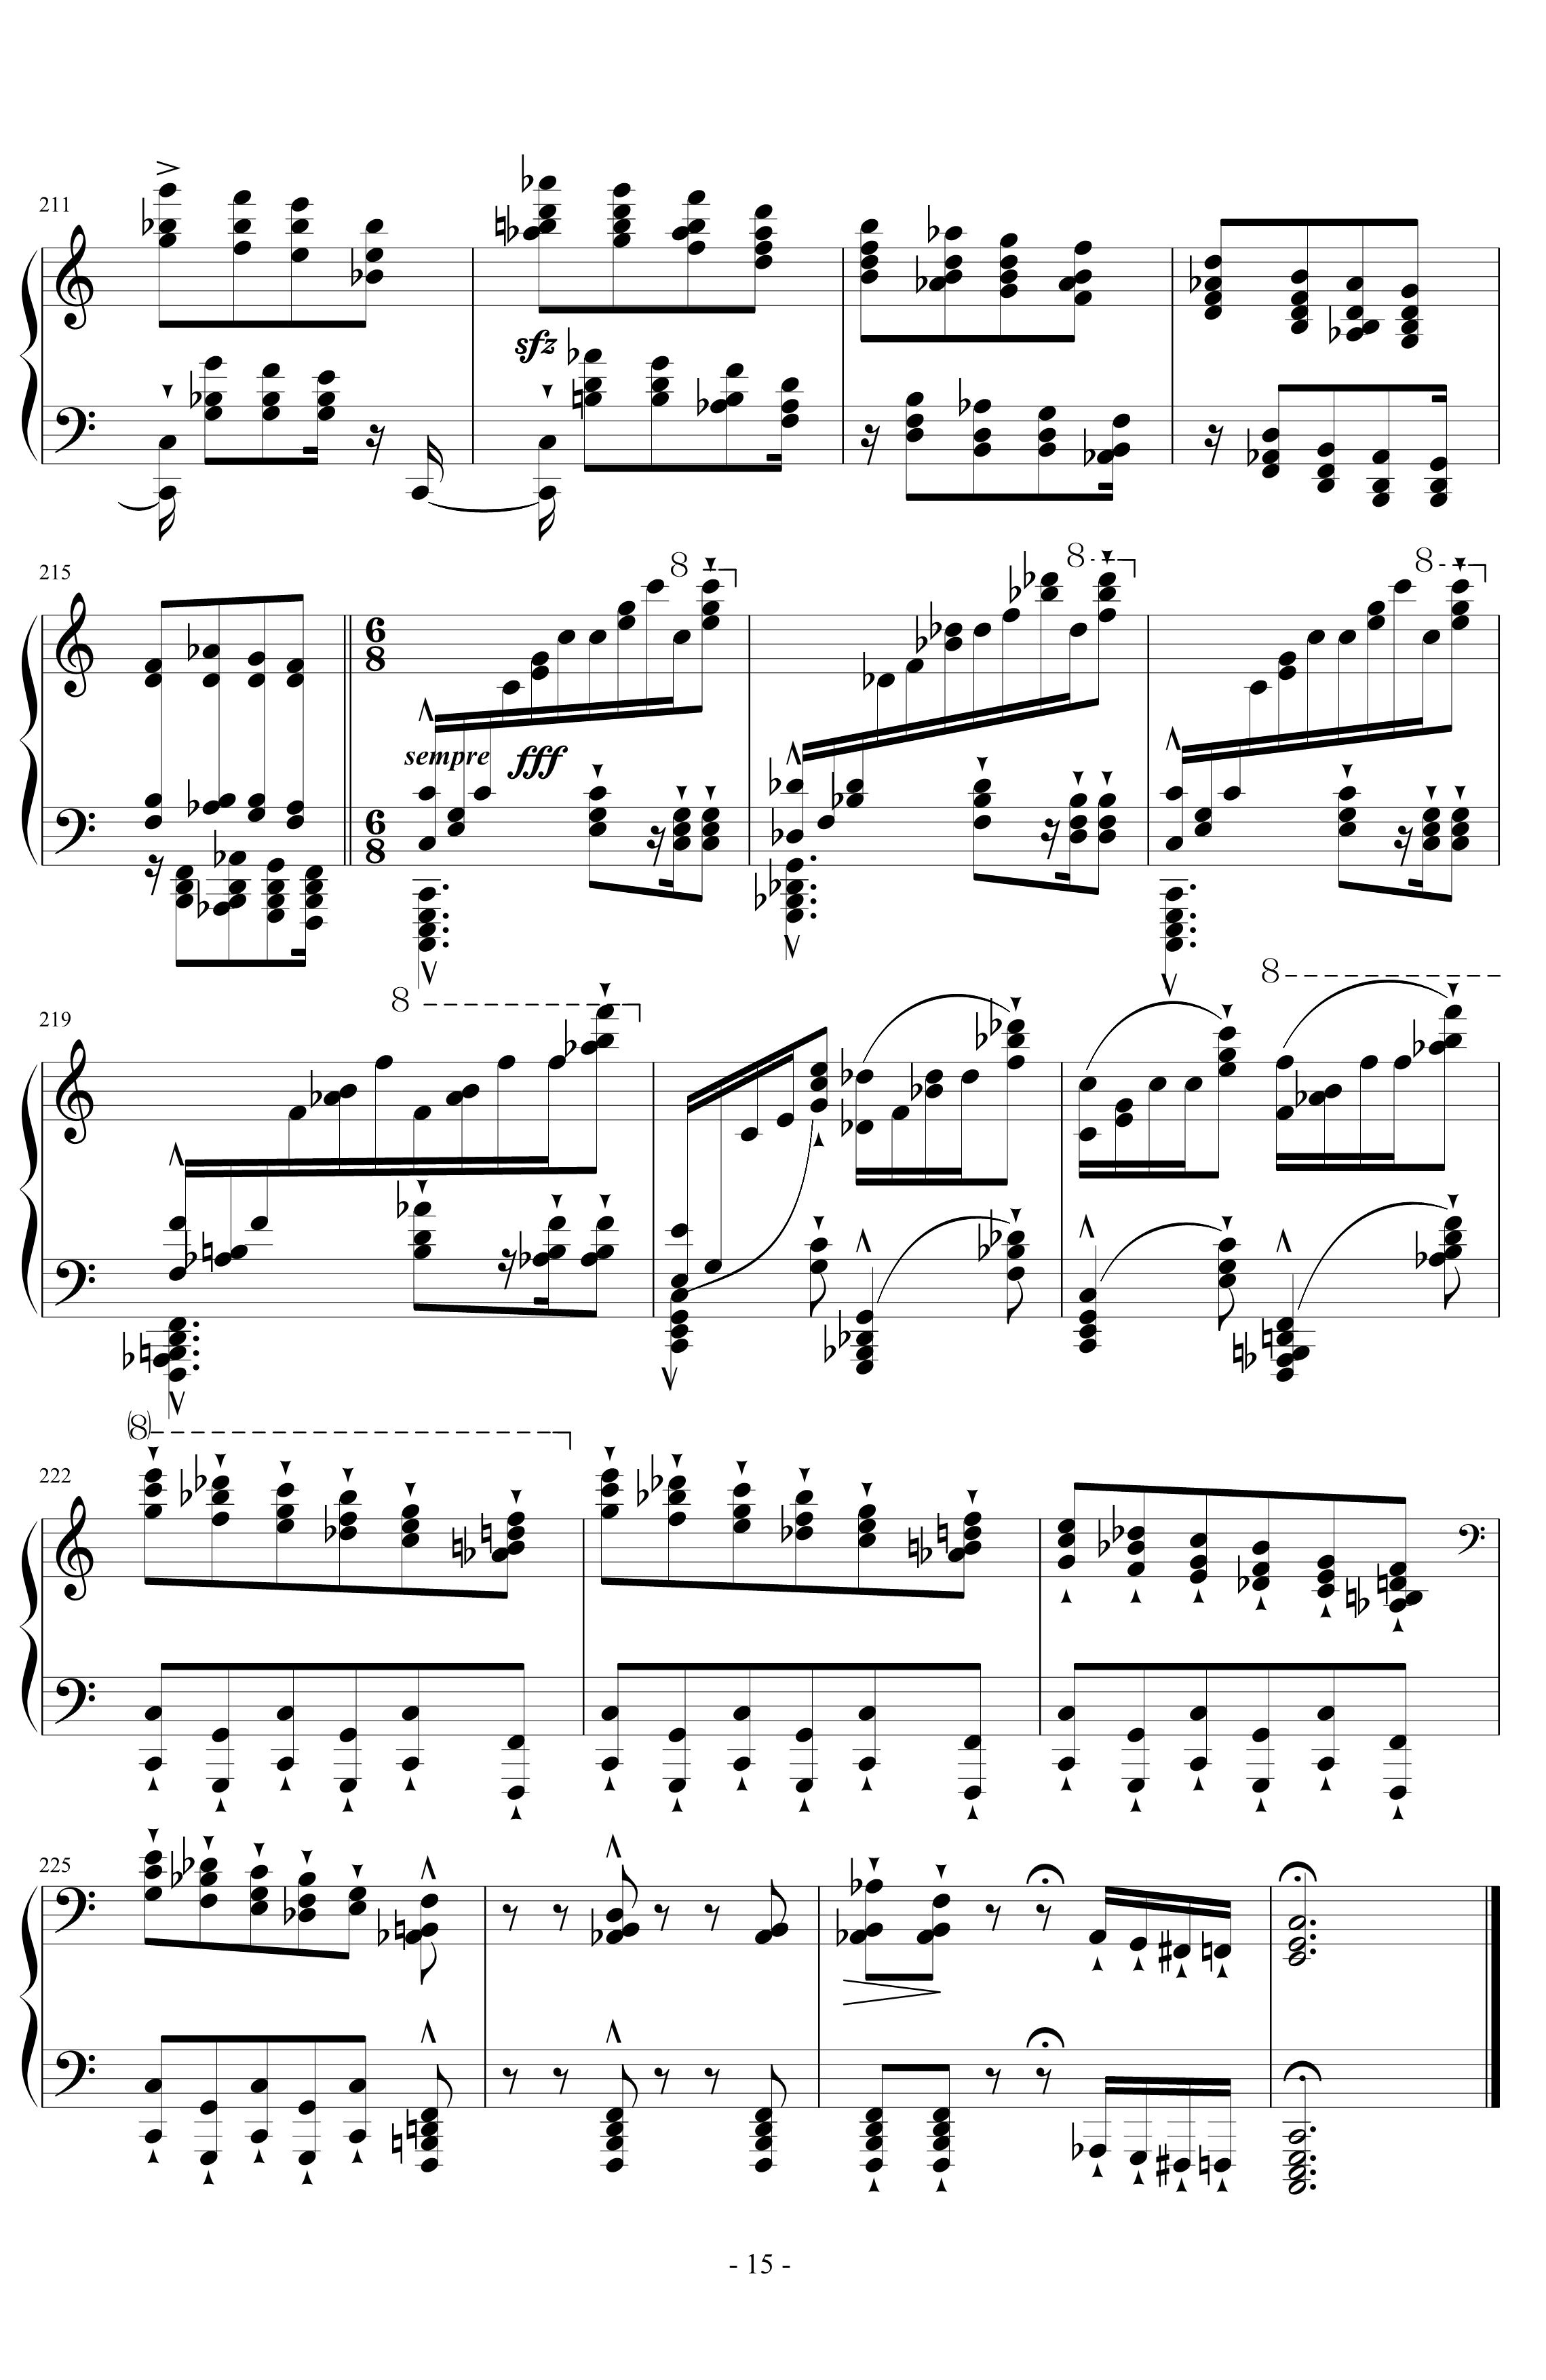 超技练习曲第8号钢琴谱-狩猎-李斯特15